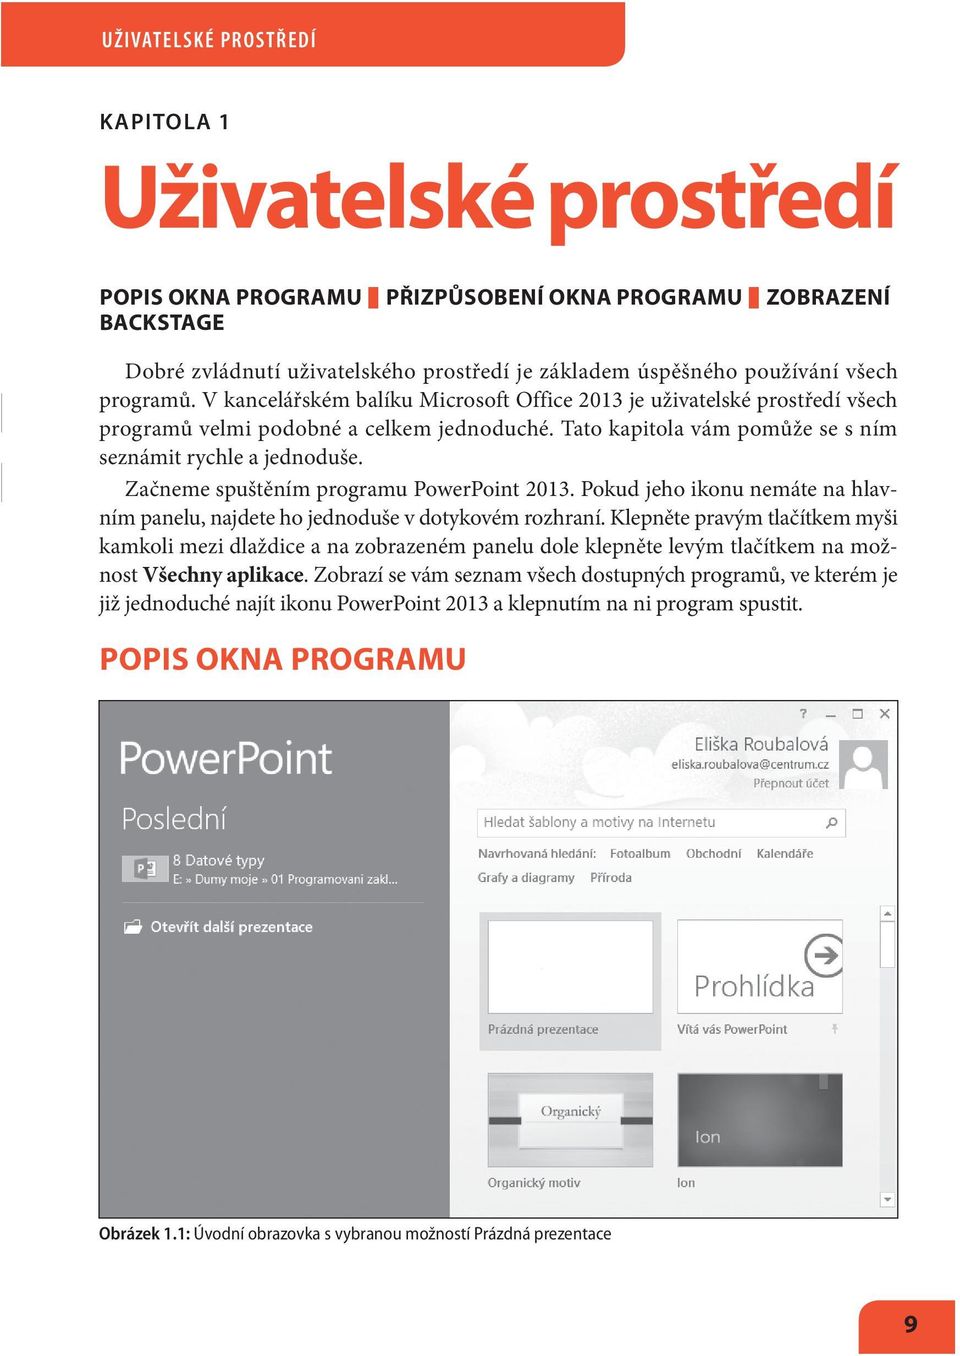 Začneme spuštěním programu PowerPoint 2013. Pokud jeho ikonu nemáte na hlavním panelu, najdete ho jednoduše v dotykovém rozhraní.